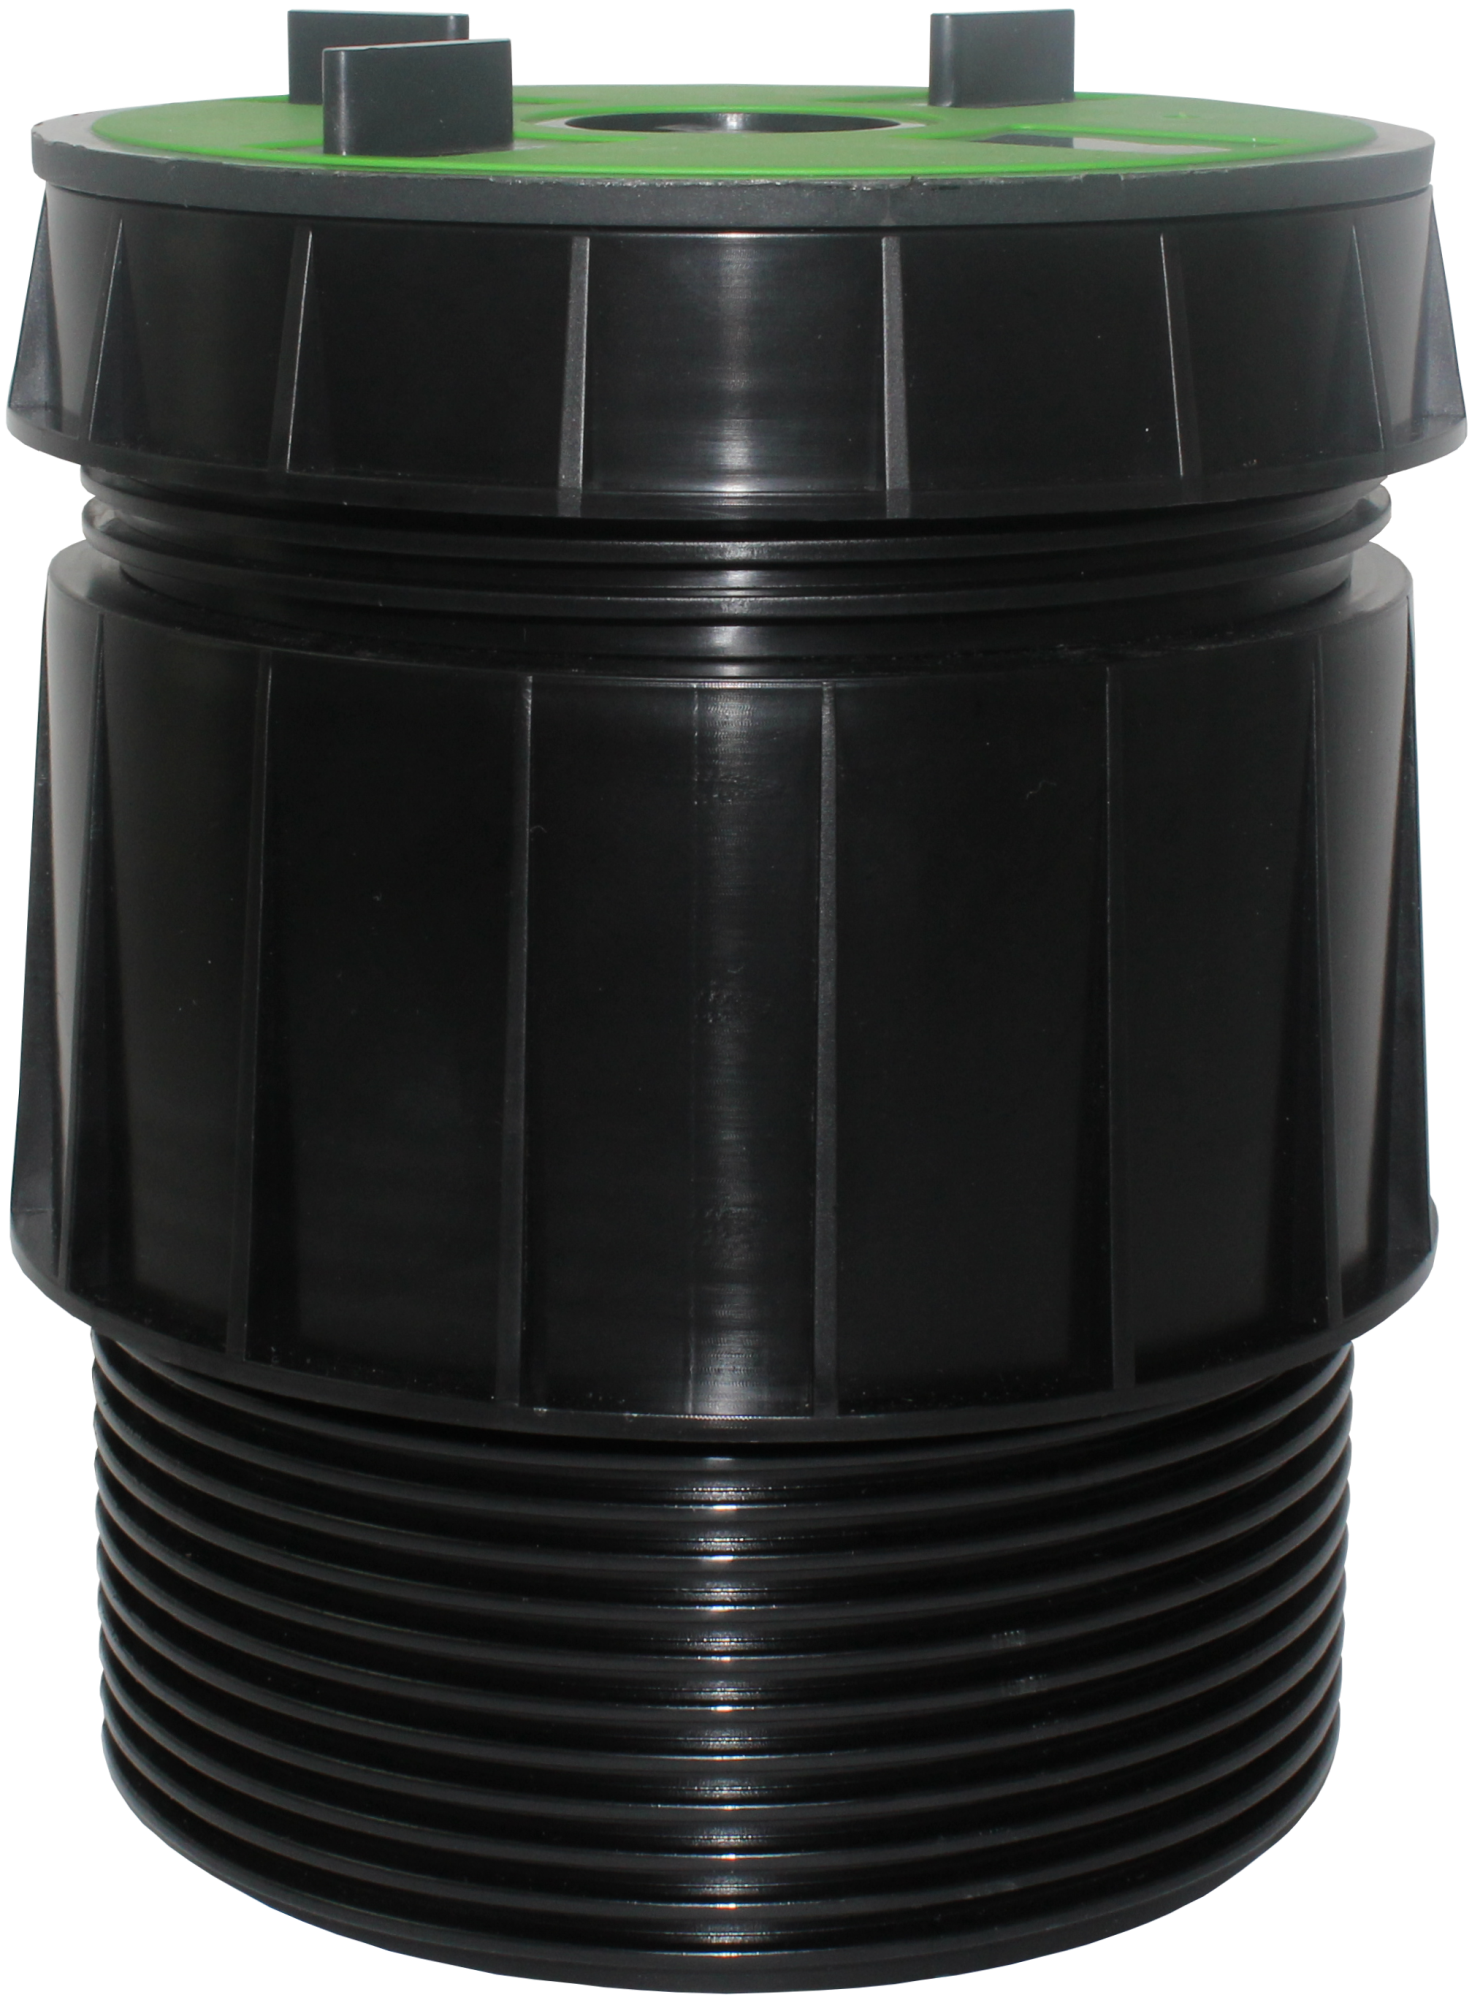 VOLFI Teleskop Dreh-Stelzlager, 5-tlg. Kunststoff, TL-VT100, 3Stege 10/10-140mm, verstb.100-175mm